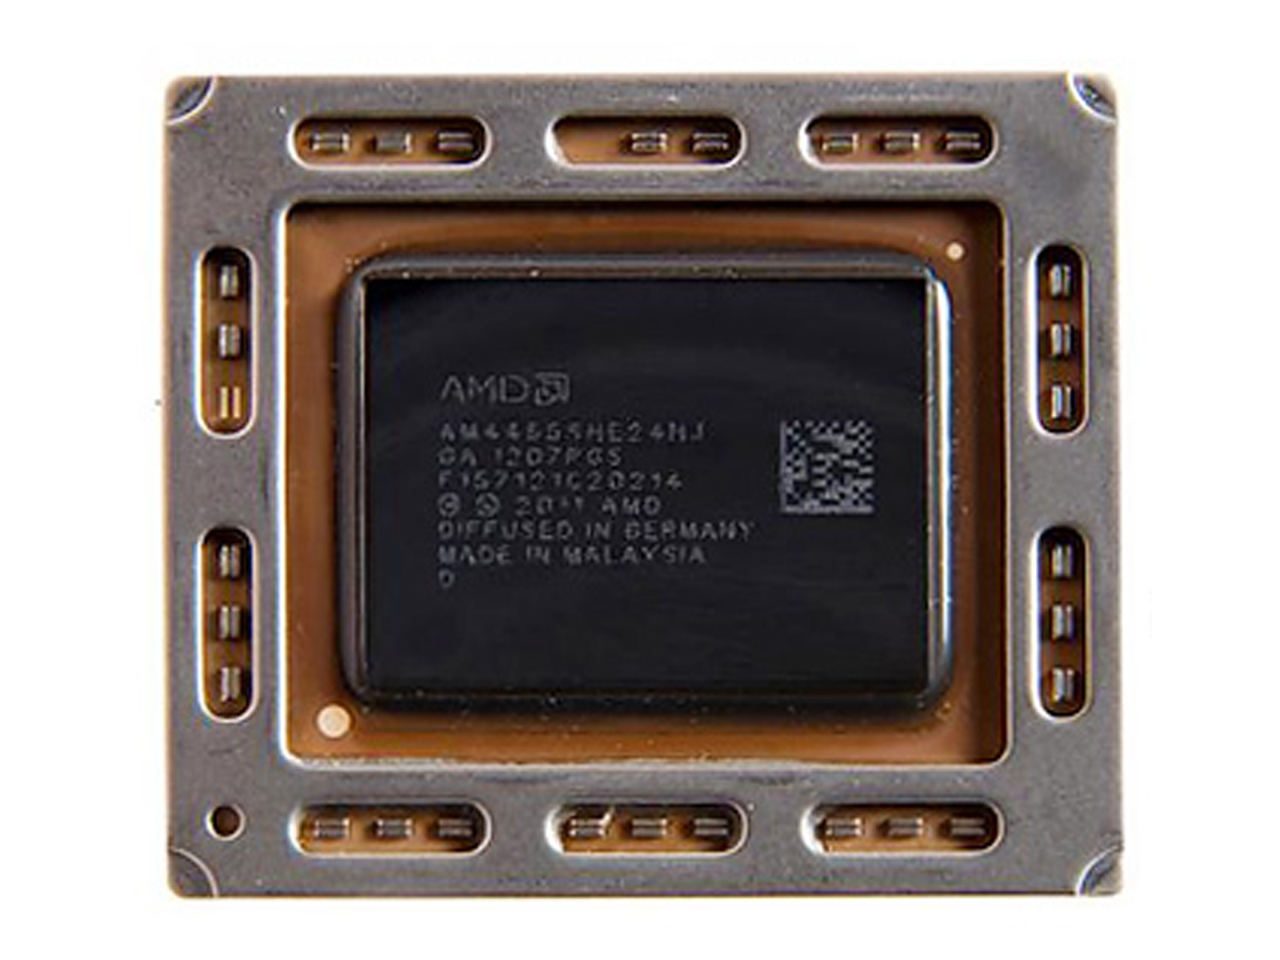 AM4455SHE24HJ procesor